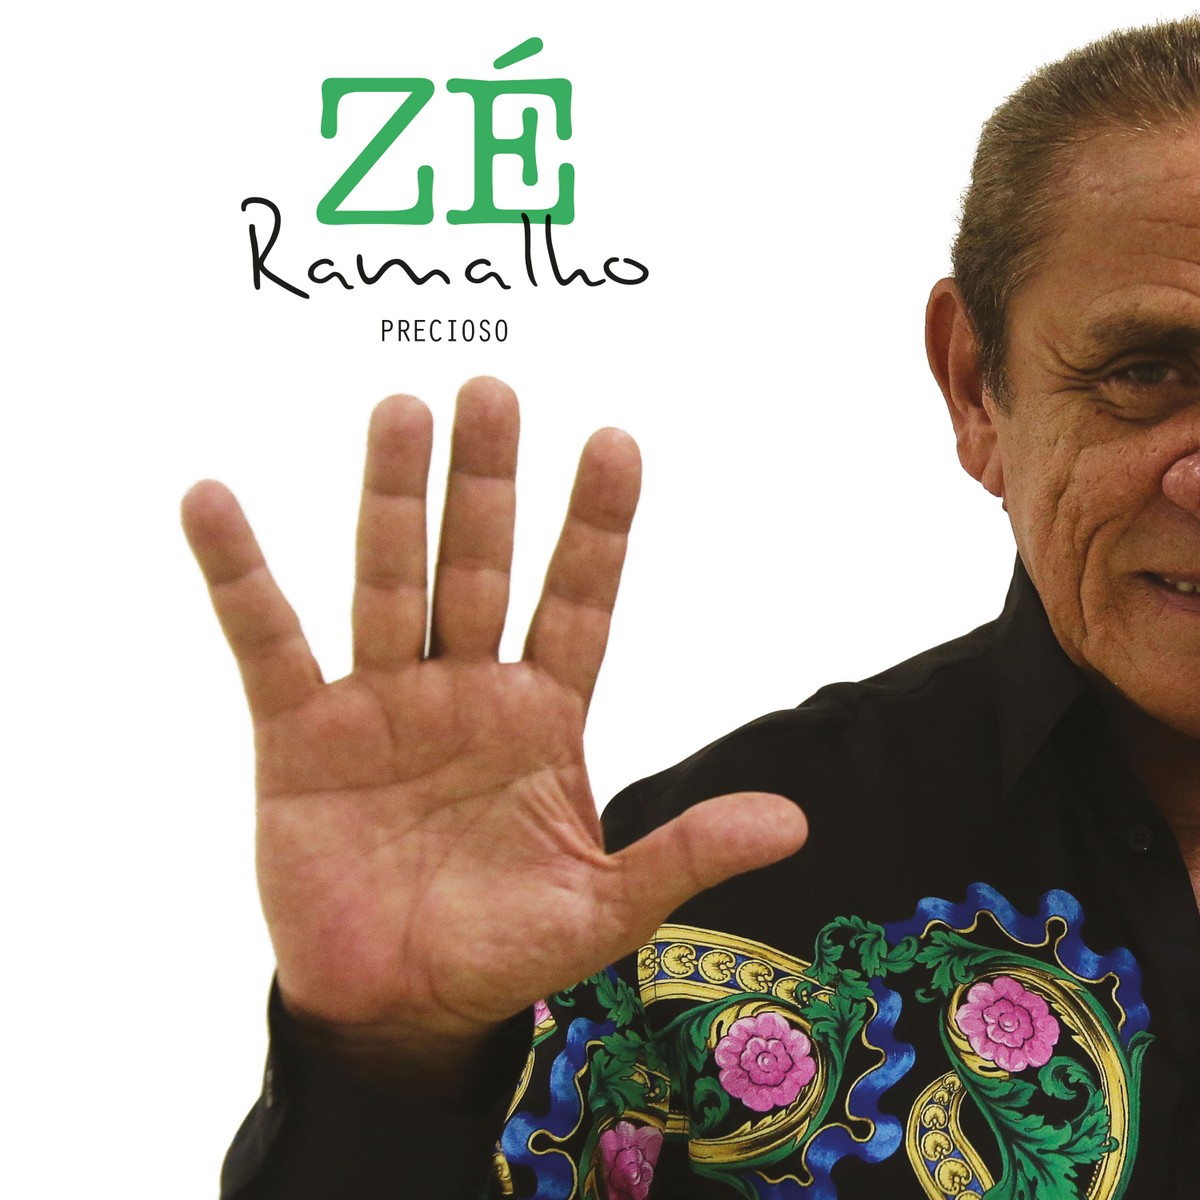 Zé Ramalho canta seresta de Elomar em gravação inédita da coletânea ‘Precioso’ | Blog do Mauro Ferreira